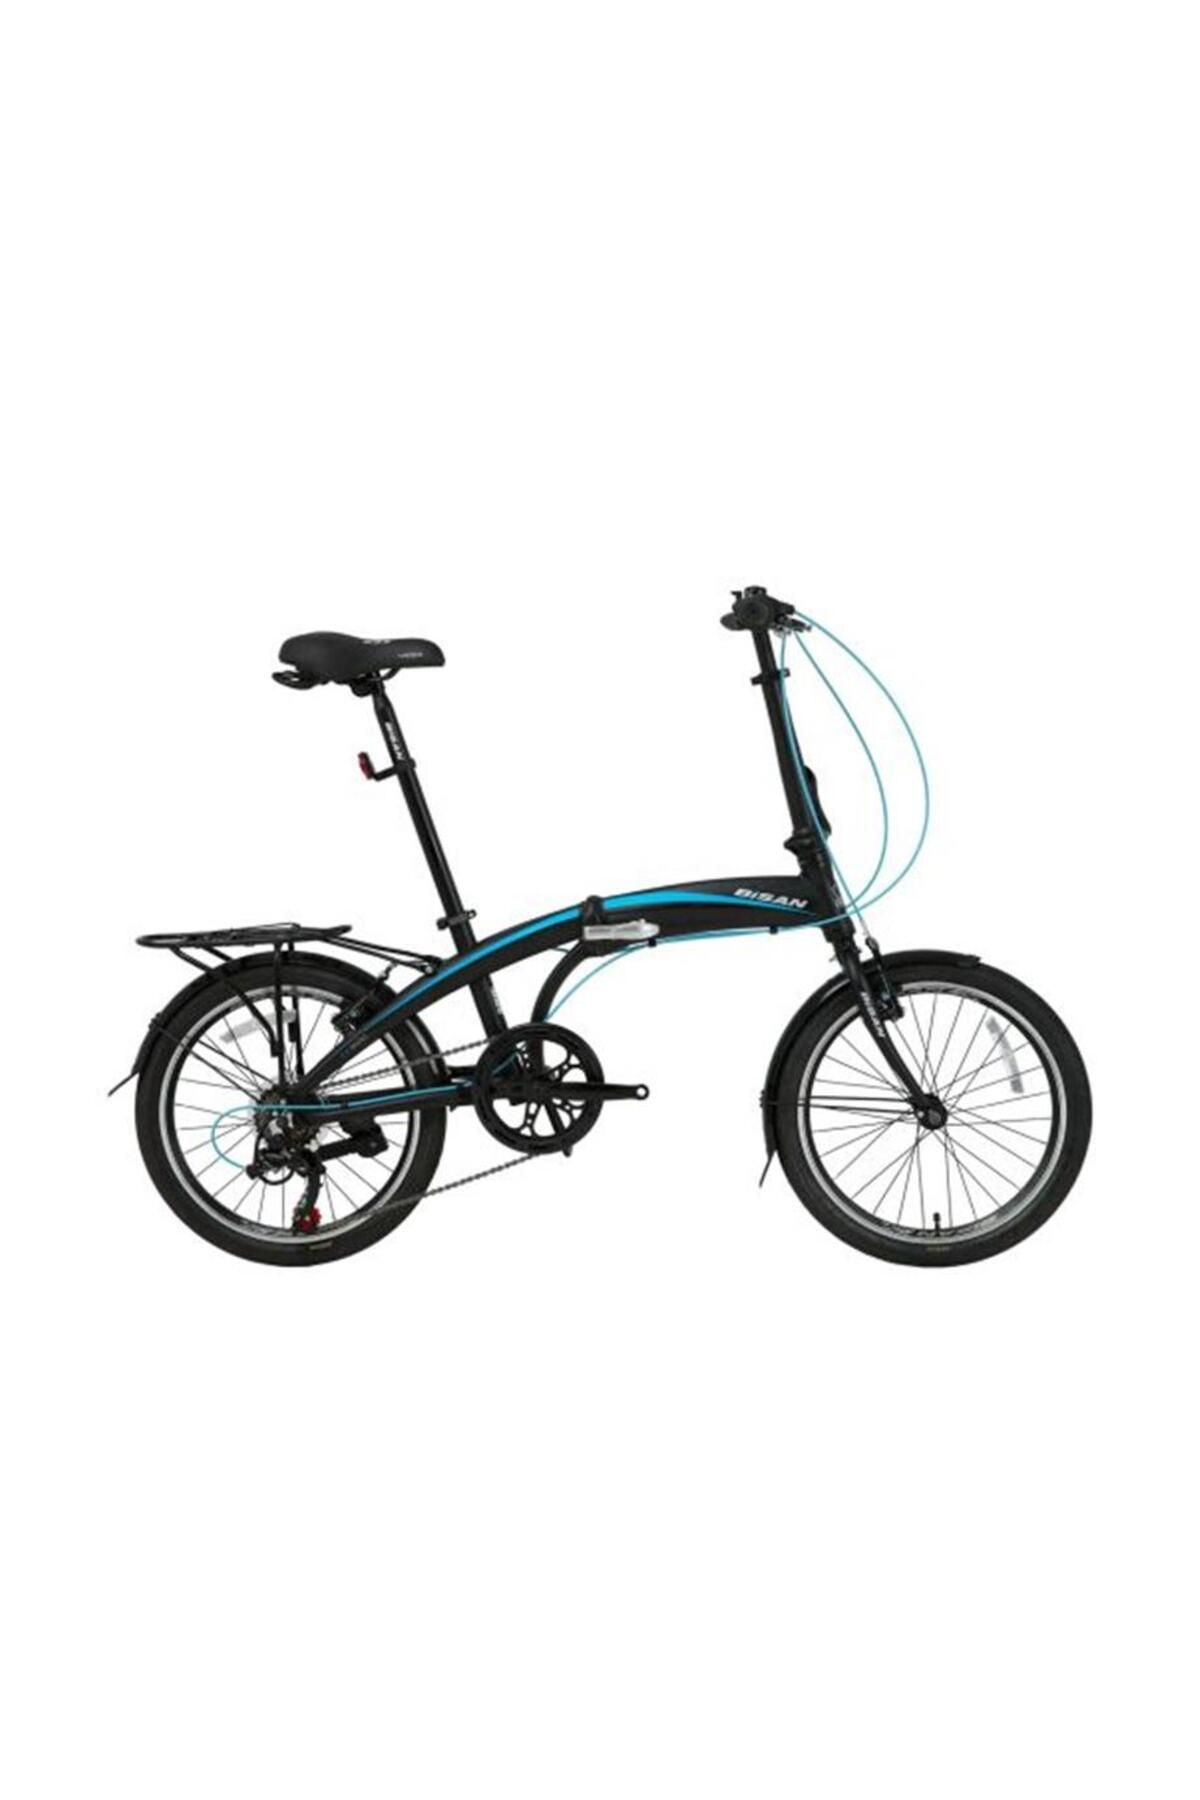 Bisan Fx 3500-trn Katlanır Bisiklet 280cm V 20 Jant 7 Vites Siyah Mavi